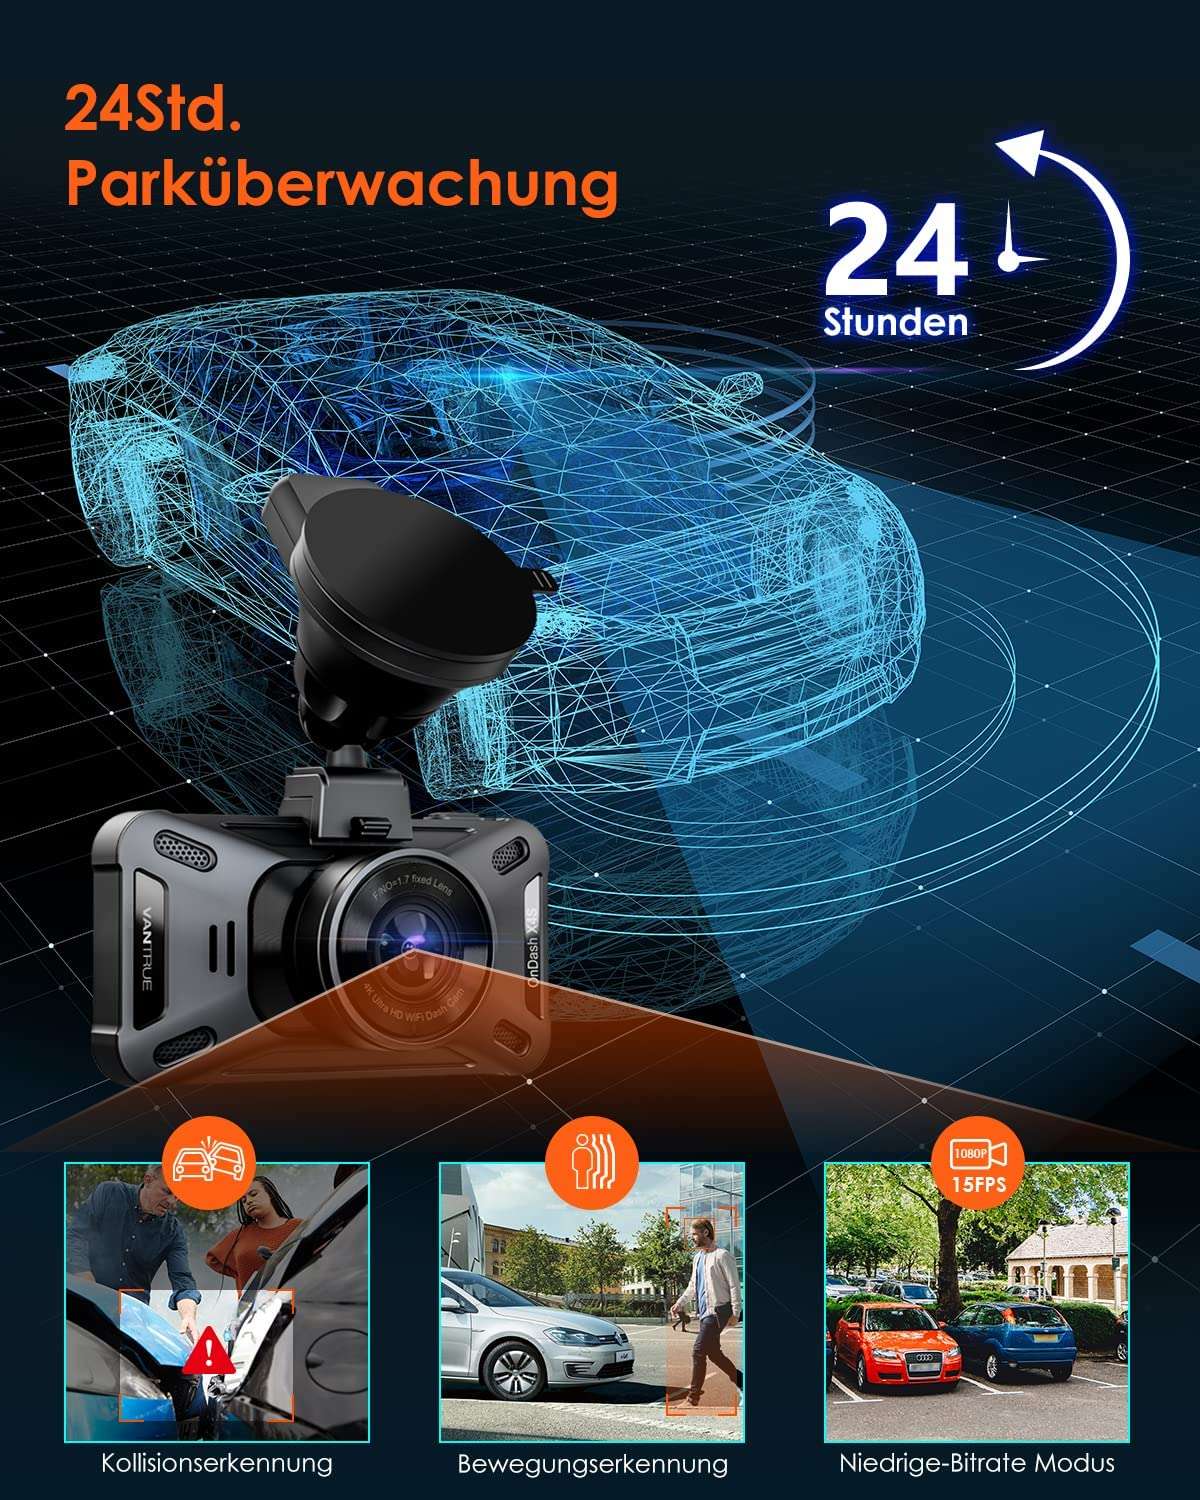 Kamera samochodowa Vantrue X4S WIFI 2160P | z akcesoriami